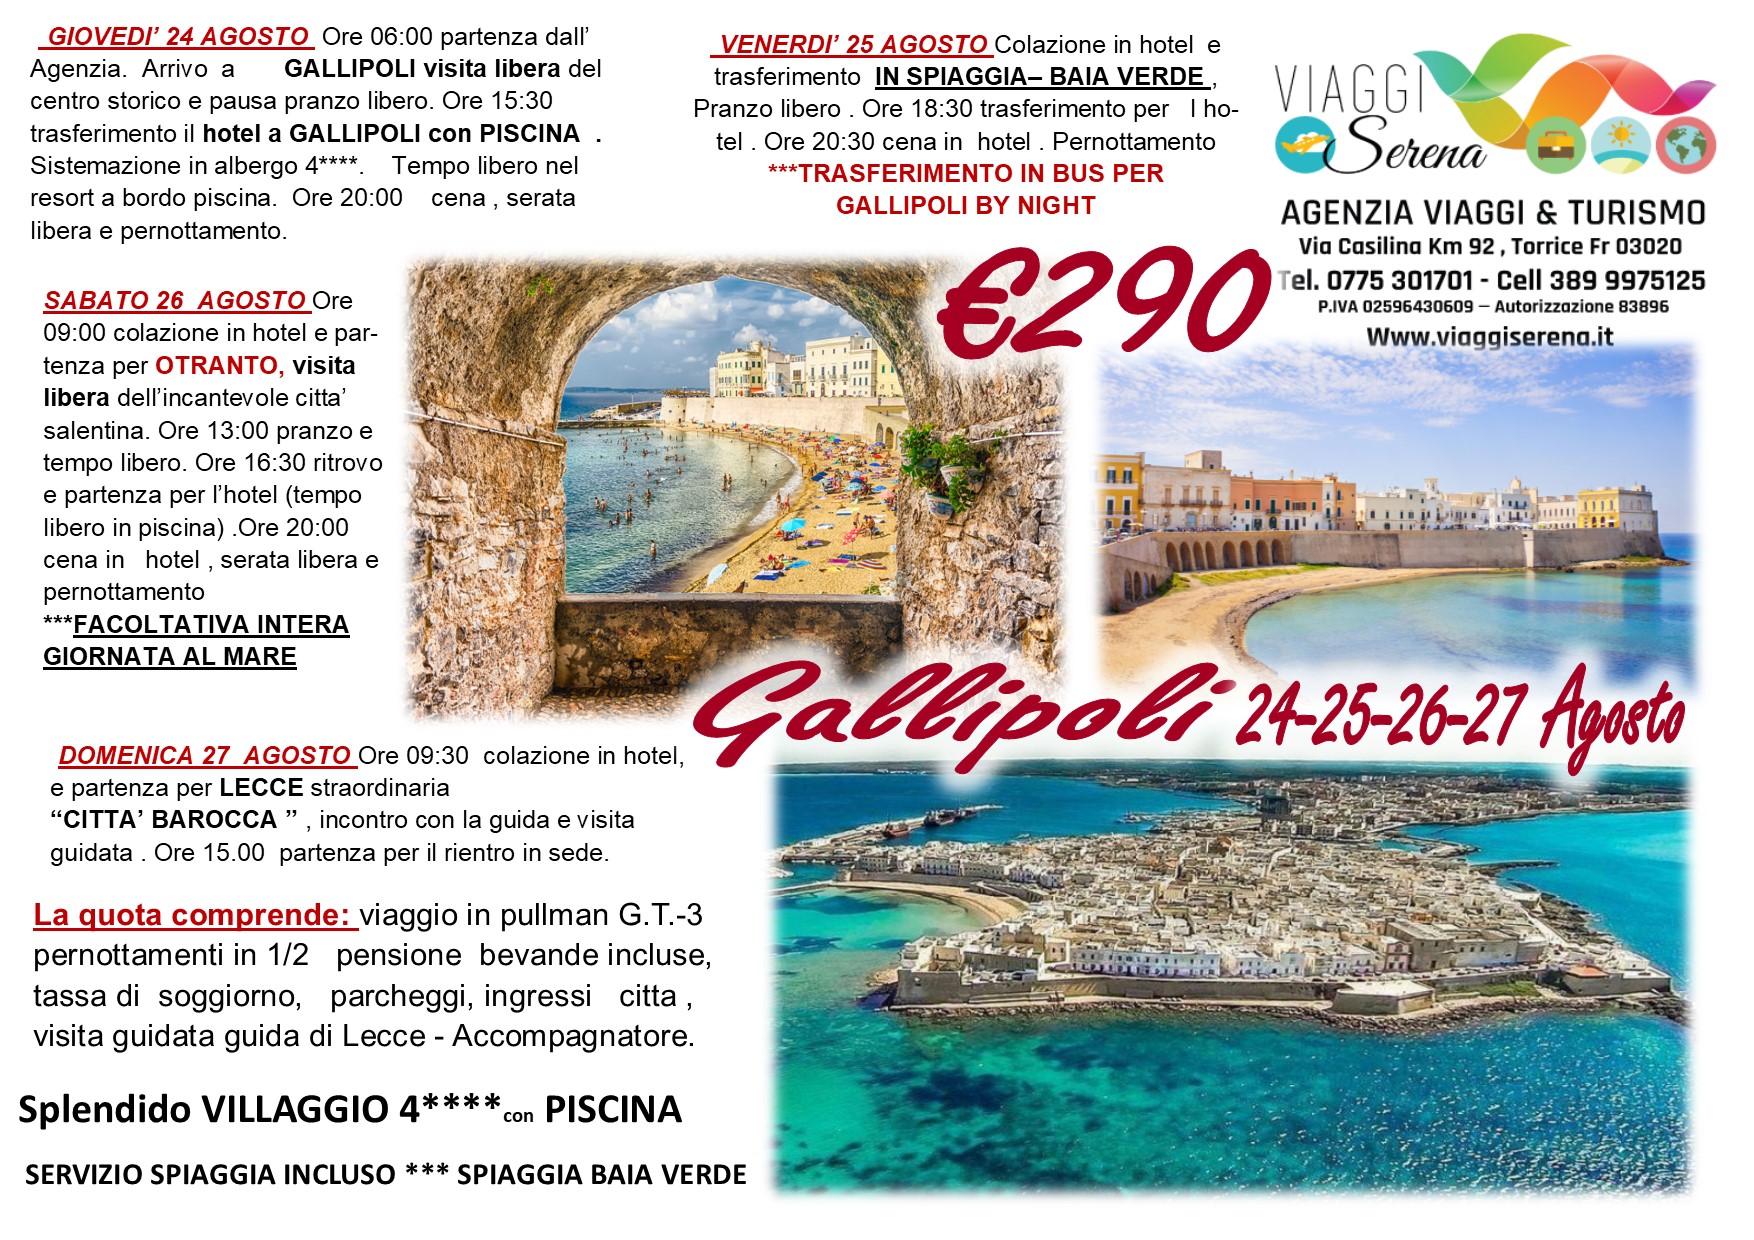 Viaggi di Gruppo: Otranto, Gallipoli, Baia verde & Lecce24-25-26-27 Agosto €290,00